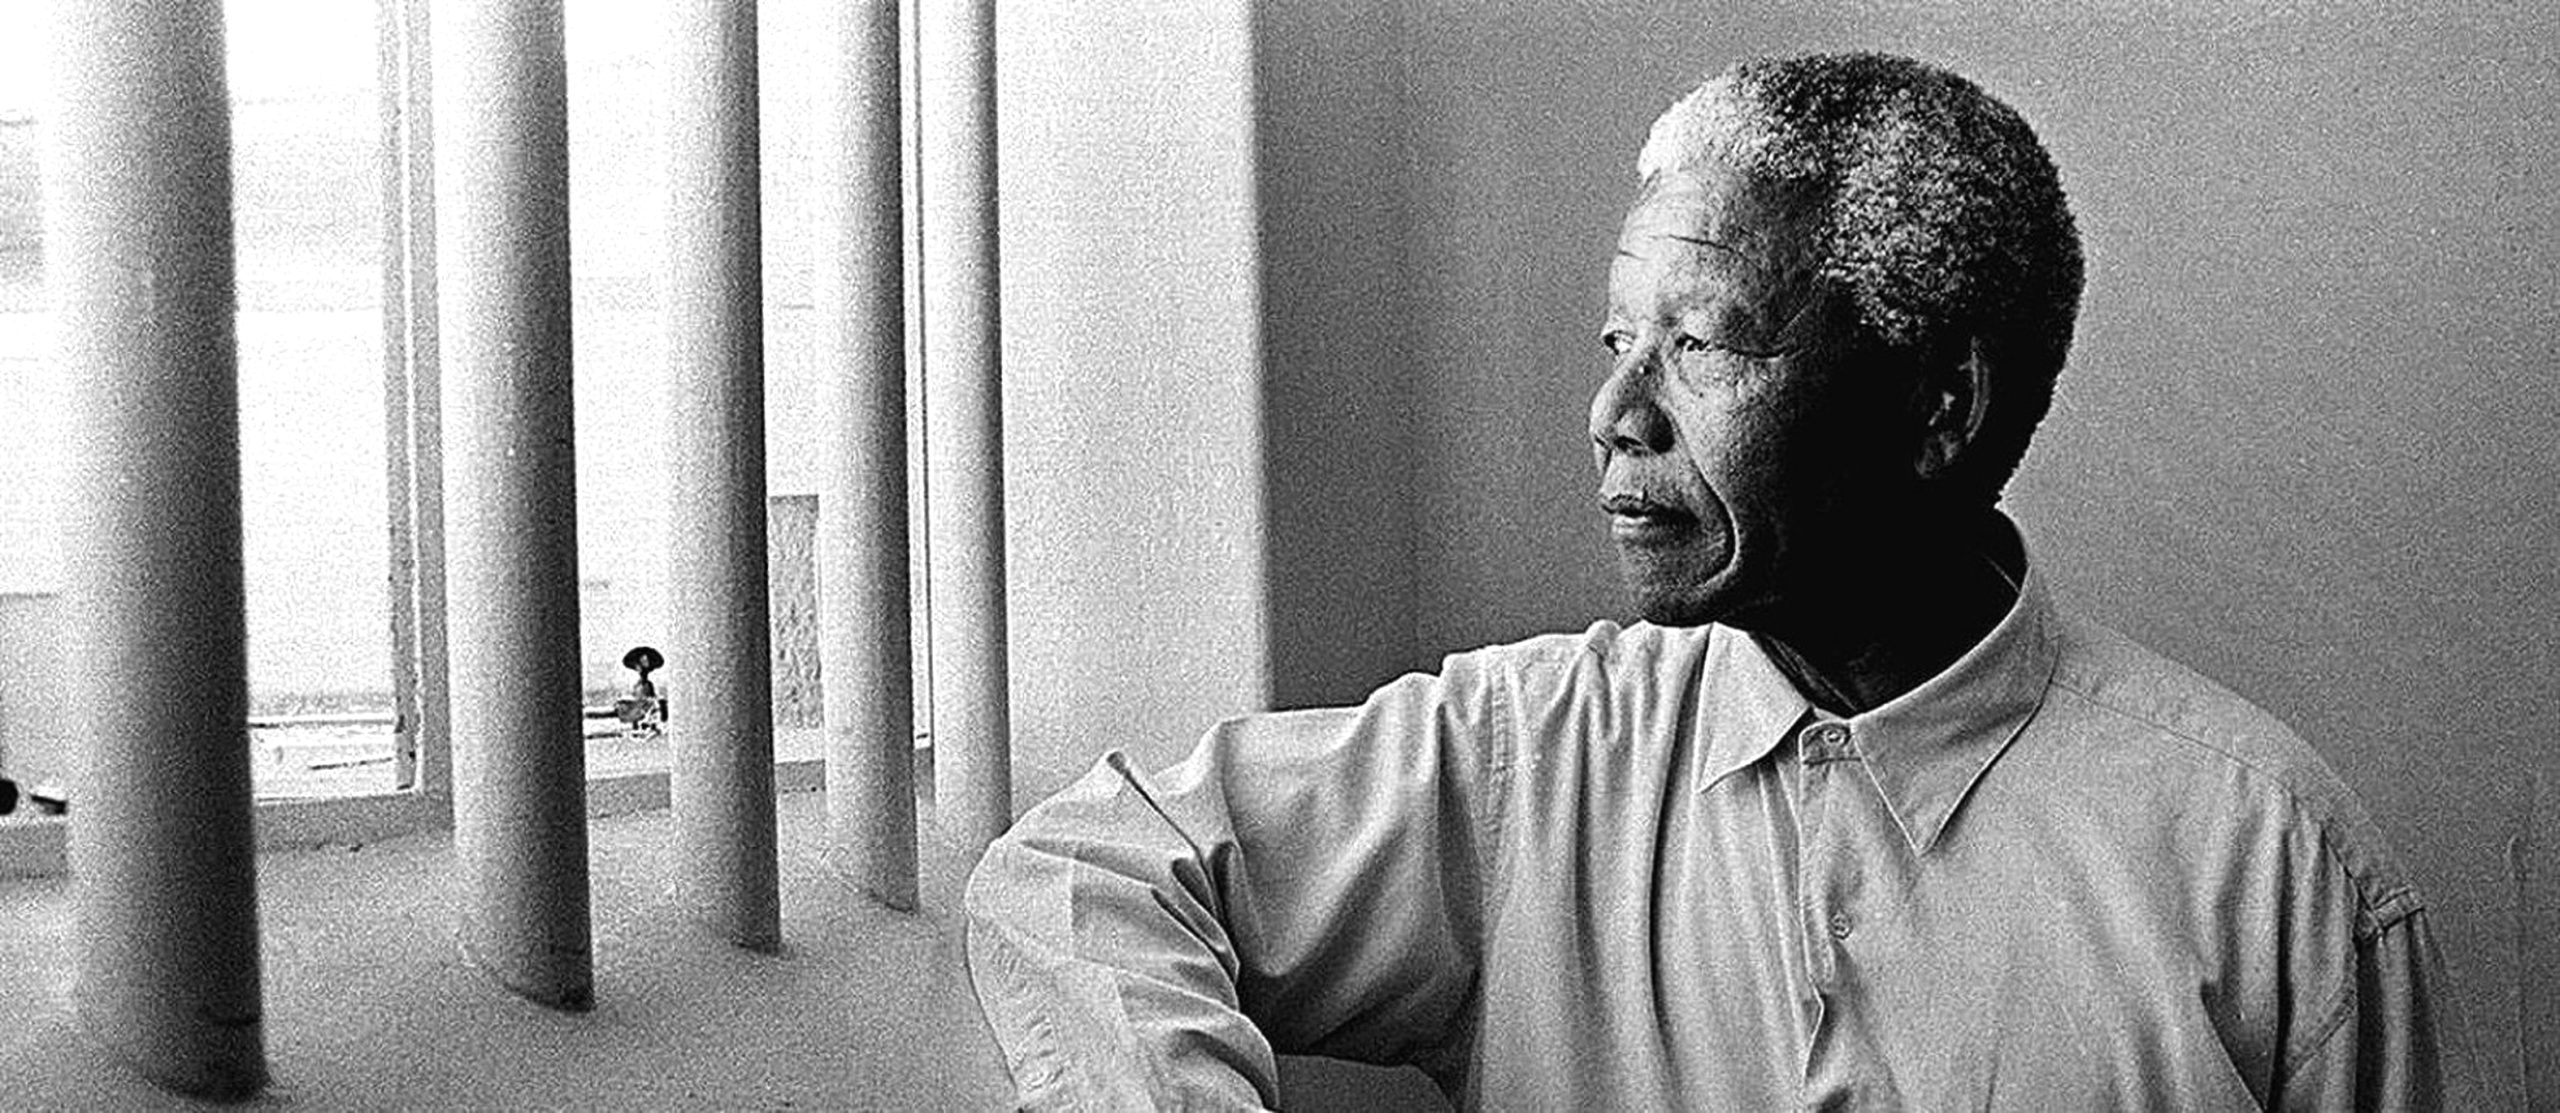 Mandela. Dez mil dias de reclusão